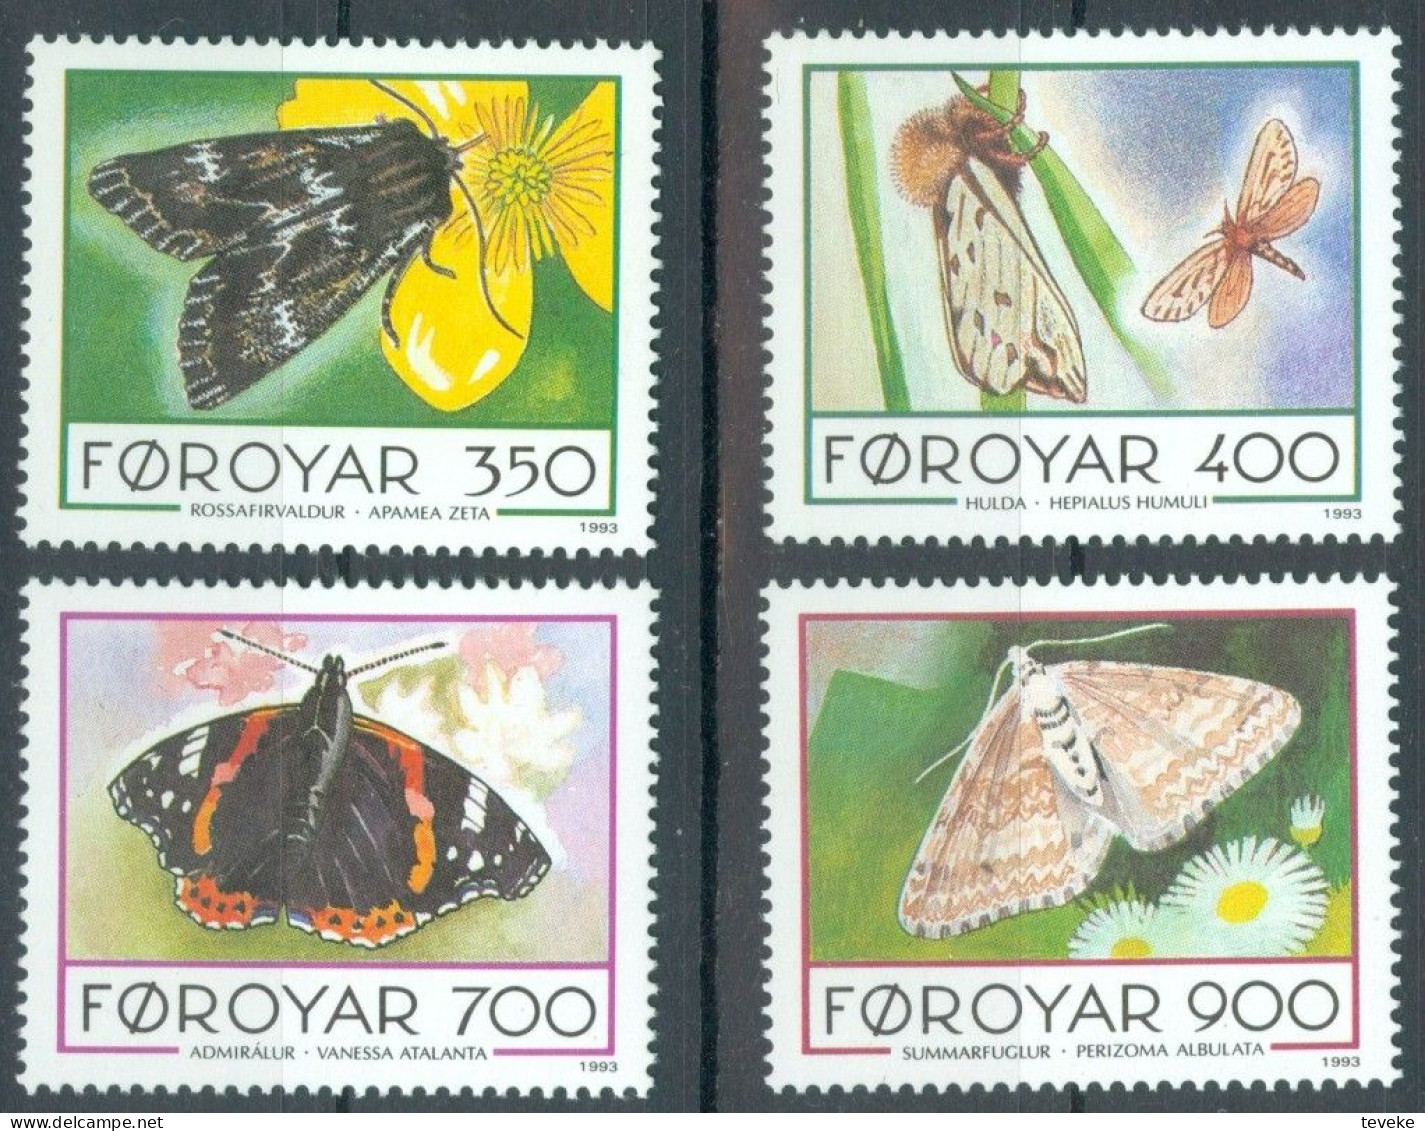 FAEROËR 1993 - MiNr. 252/255 - **/MNH - Fauna - Butterflies - Isole Faroer